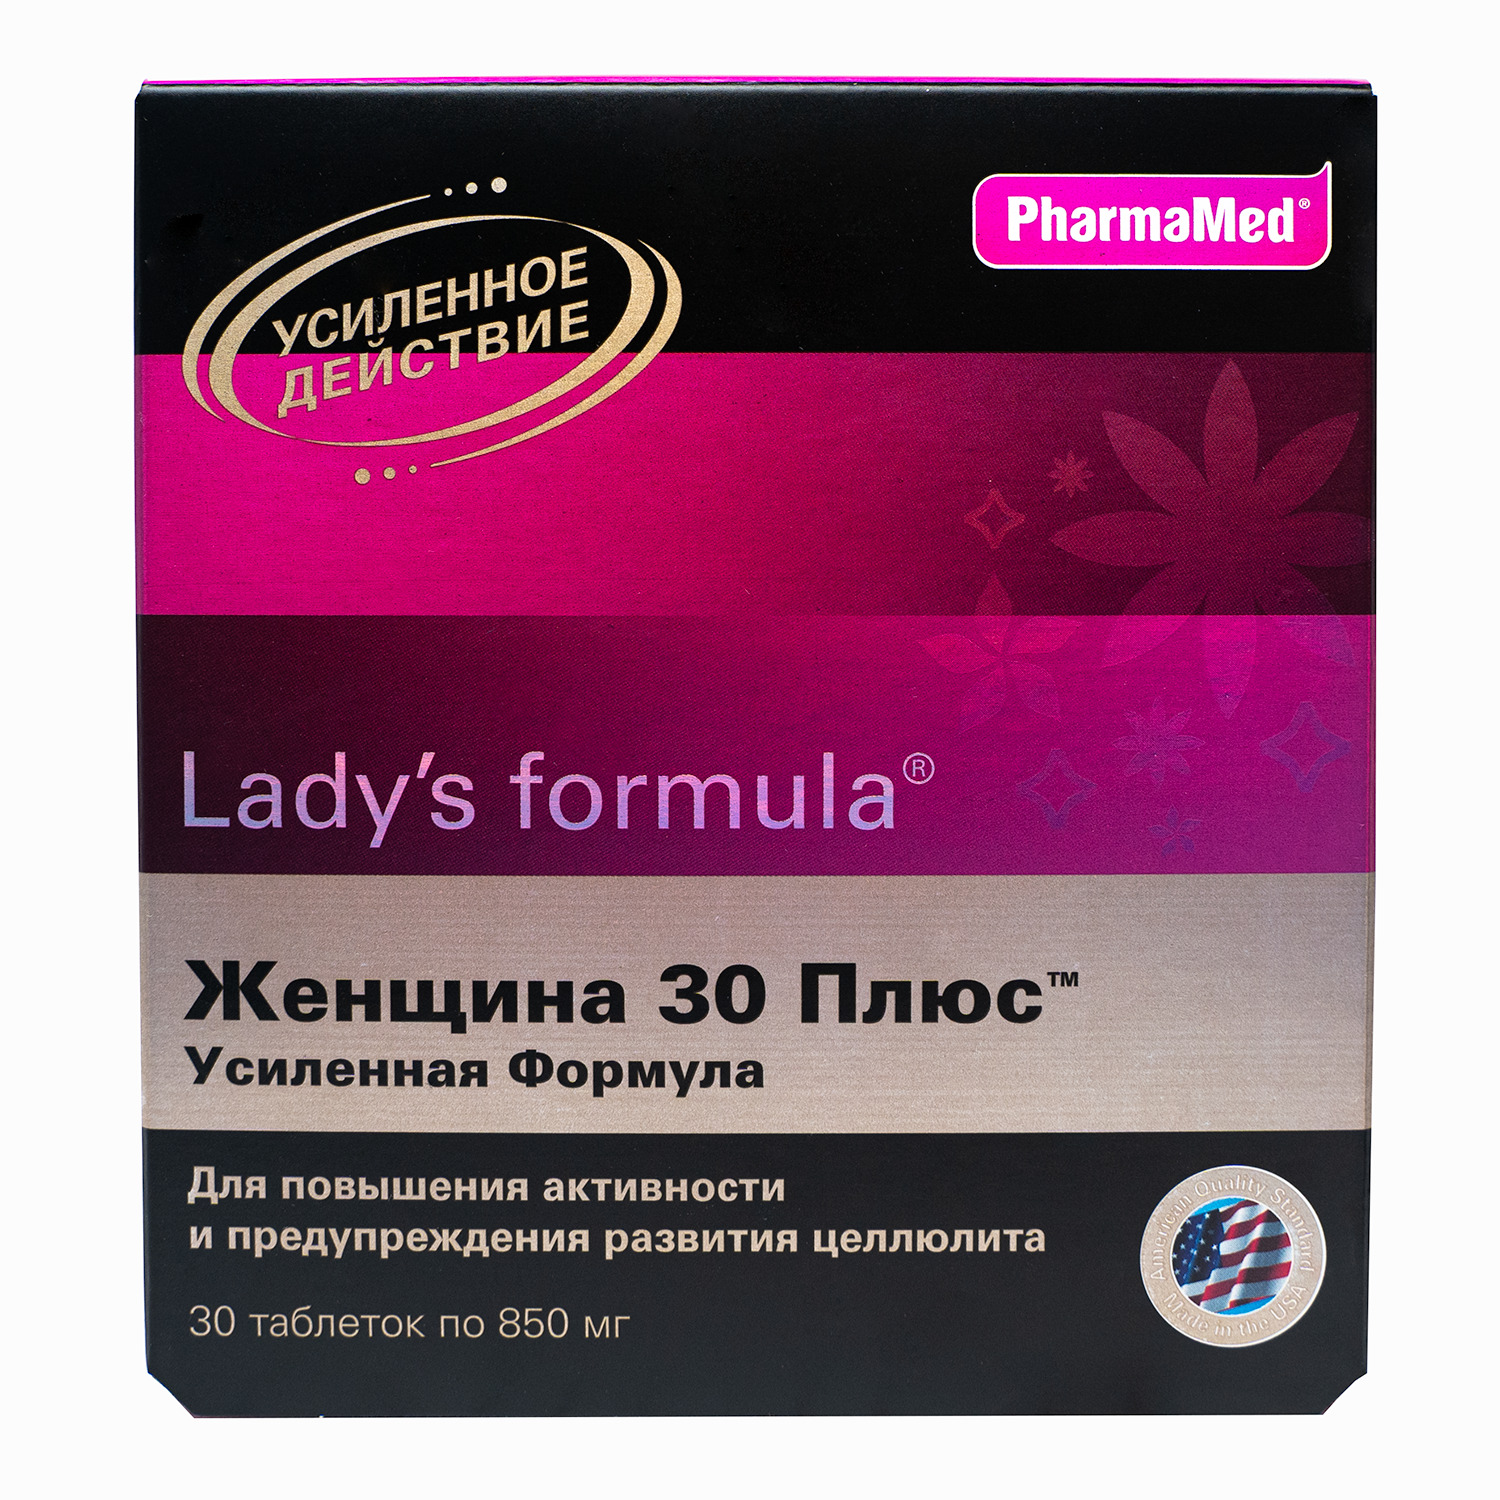 Lady formula 30. Витамины для женщин ледис формула. Ledis Formula усиленная формула. Ледис формула 30+ усиленная. Витамины для женщин Лэдис формула.